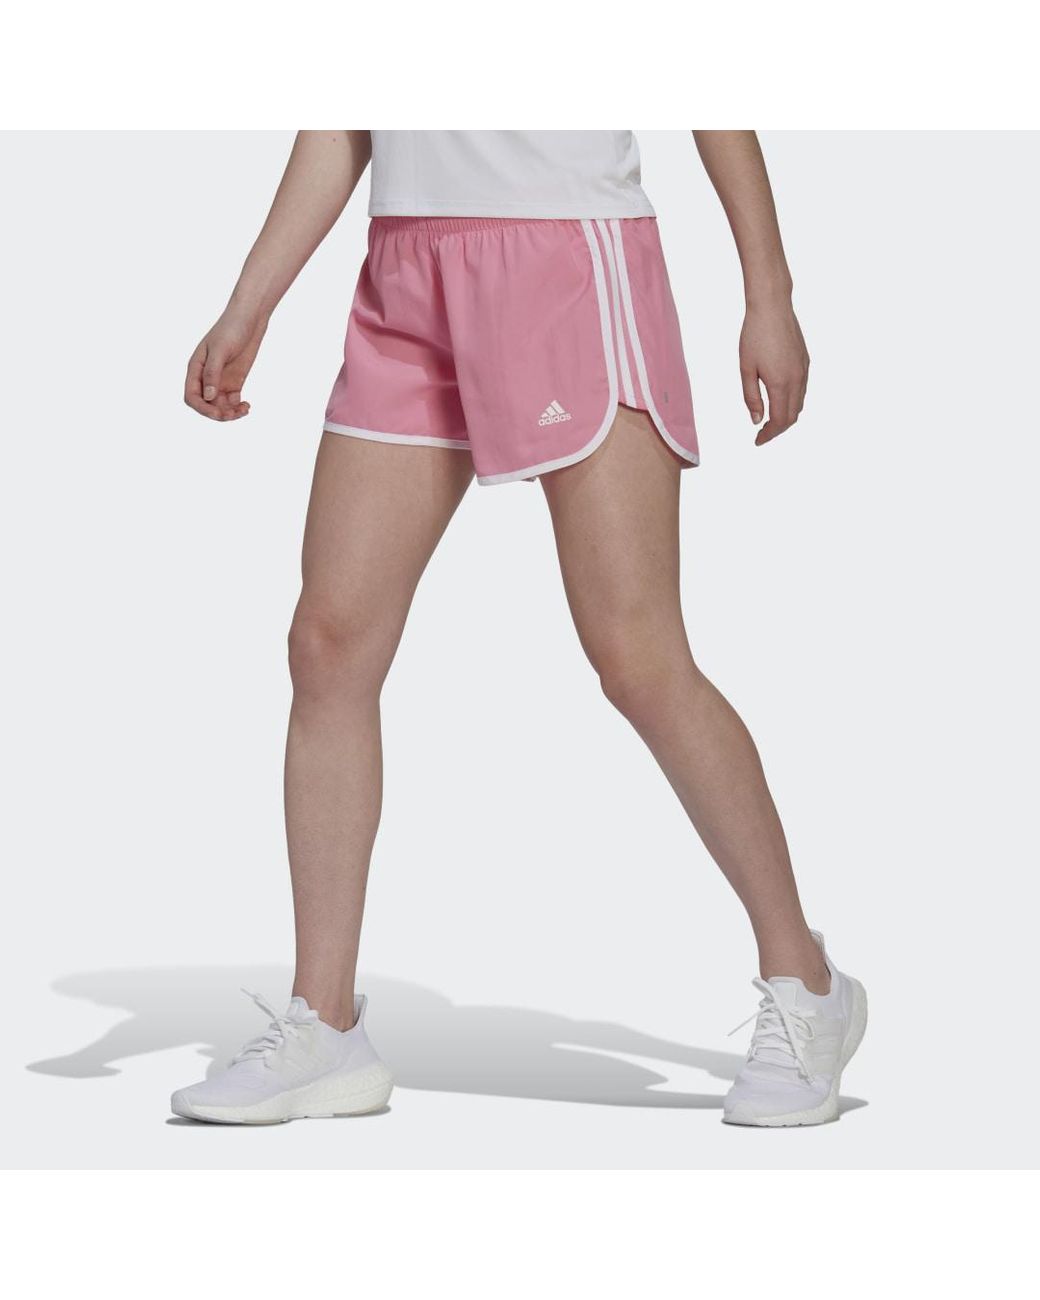 adidas Synthetik Marathon 20 Shorts in Weiß Damen Bekleidung Kurze Hosen Mini Shorts 